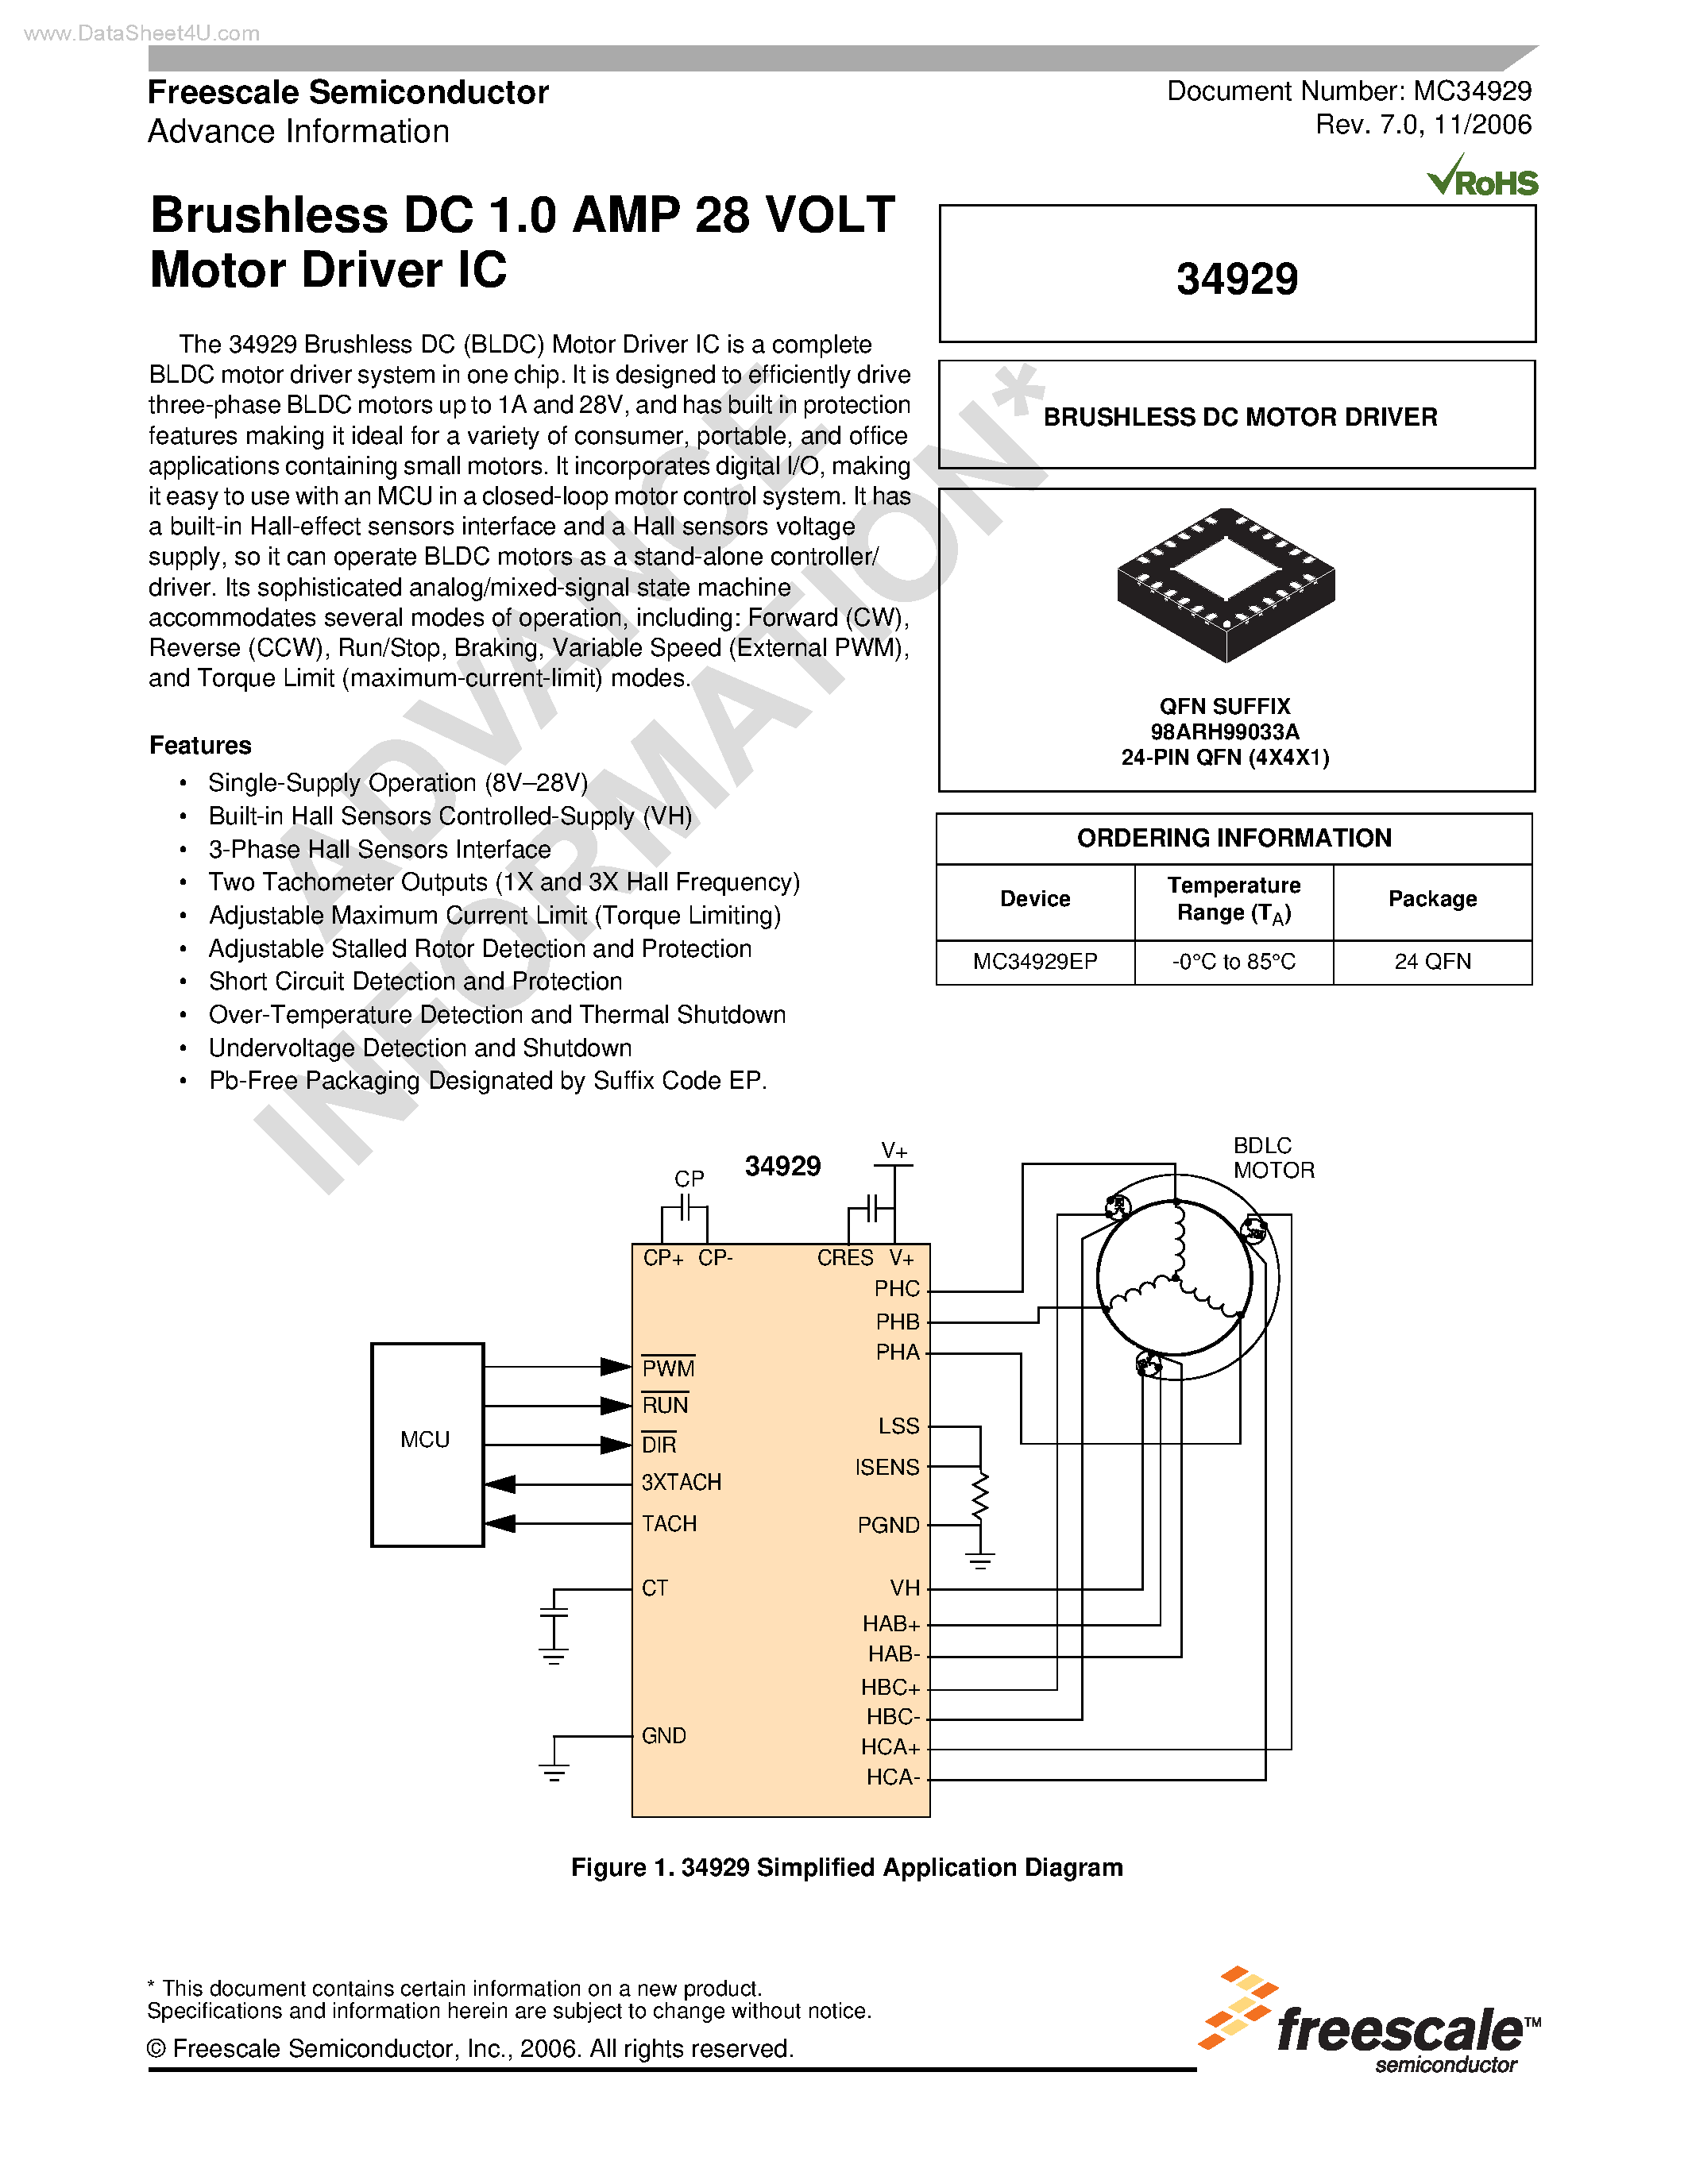 Datasheet MC34929 - Brushless DC 1.0 AMP 28 VOLT Motor Driver IC page 1